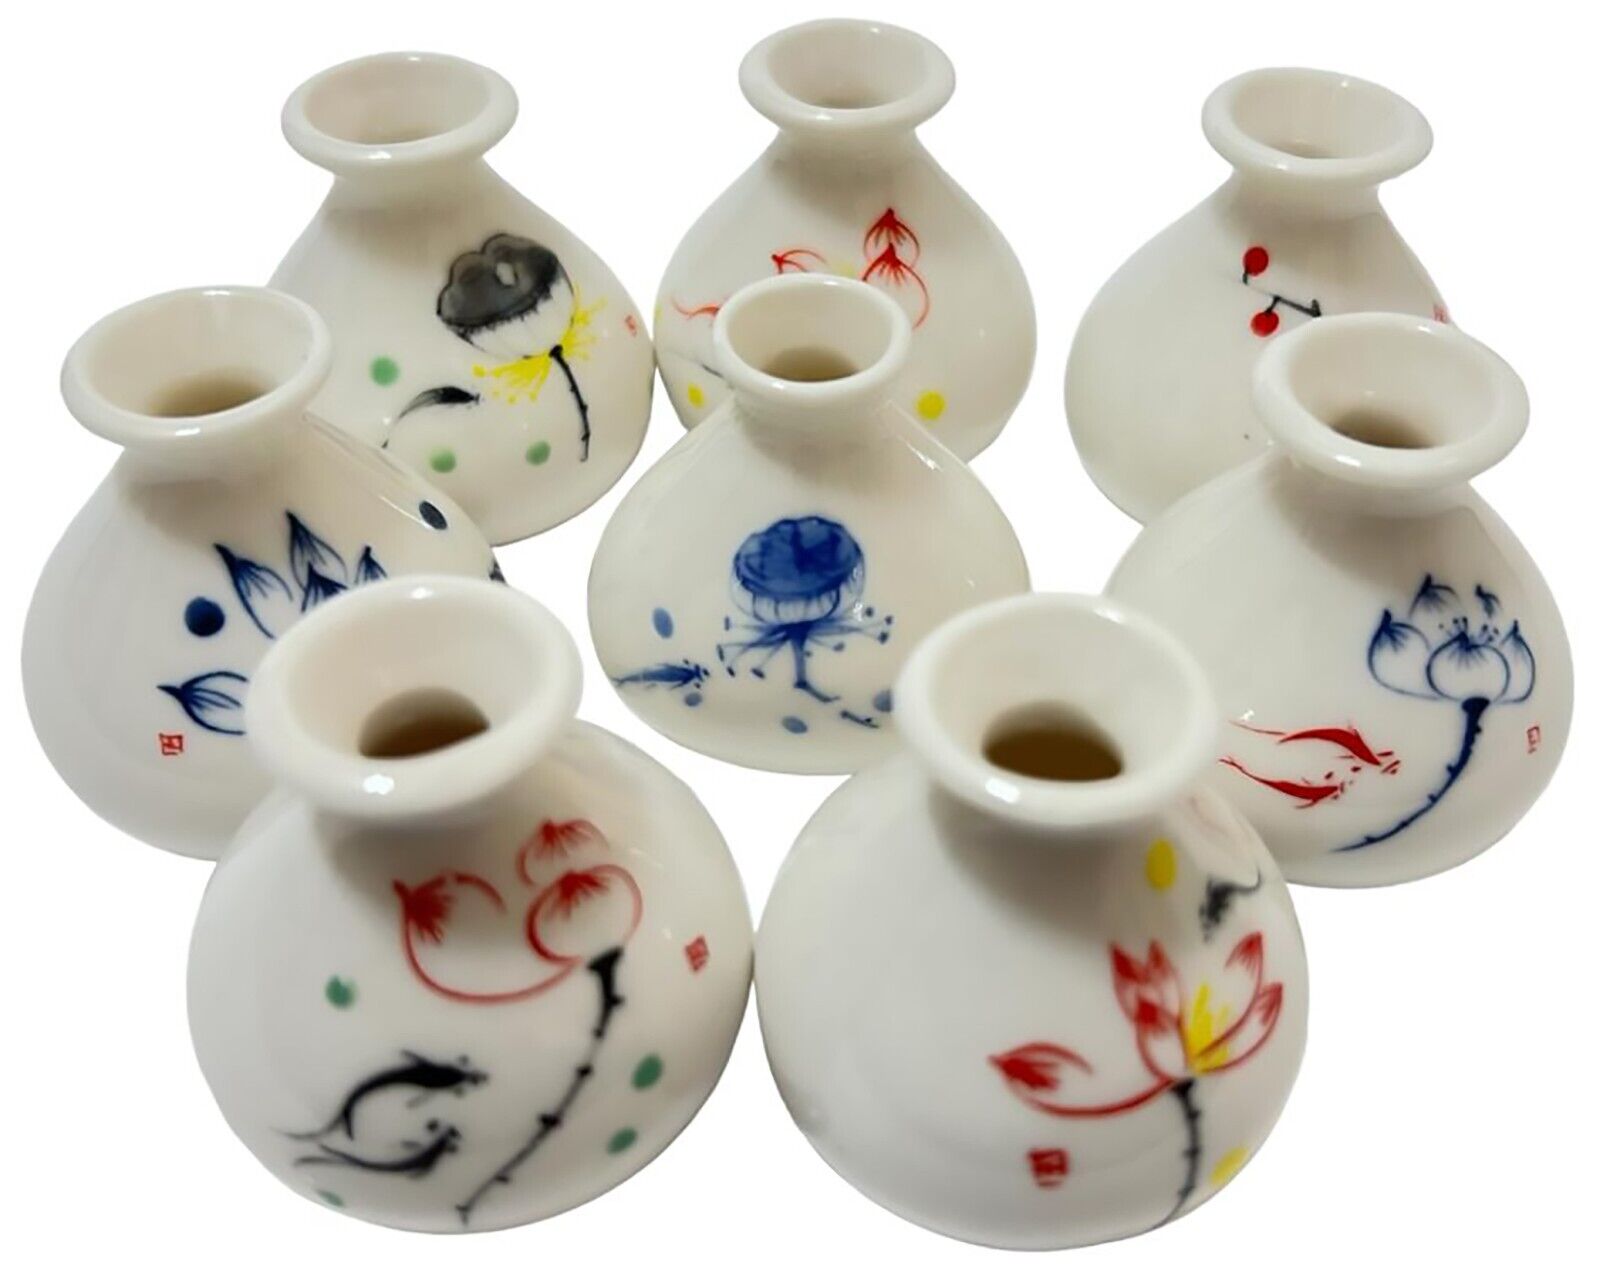 Ceramic Small Vase Teeny Tiny Handmade Hand Painting Vase Shiny For Decoration